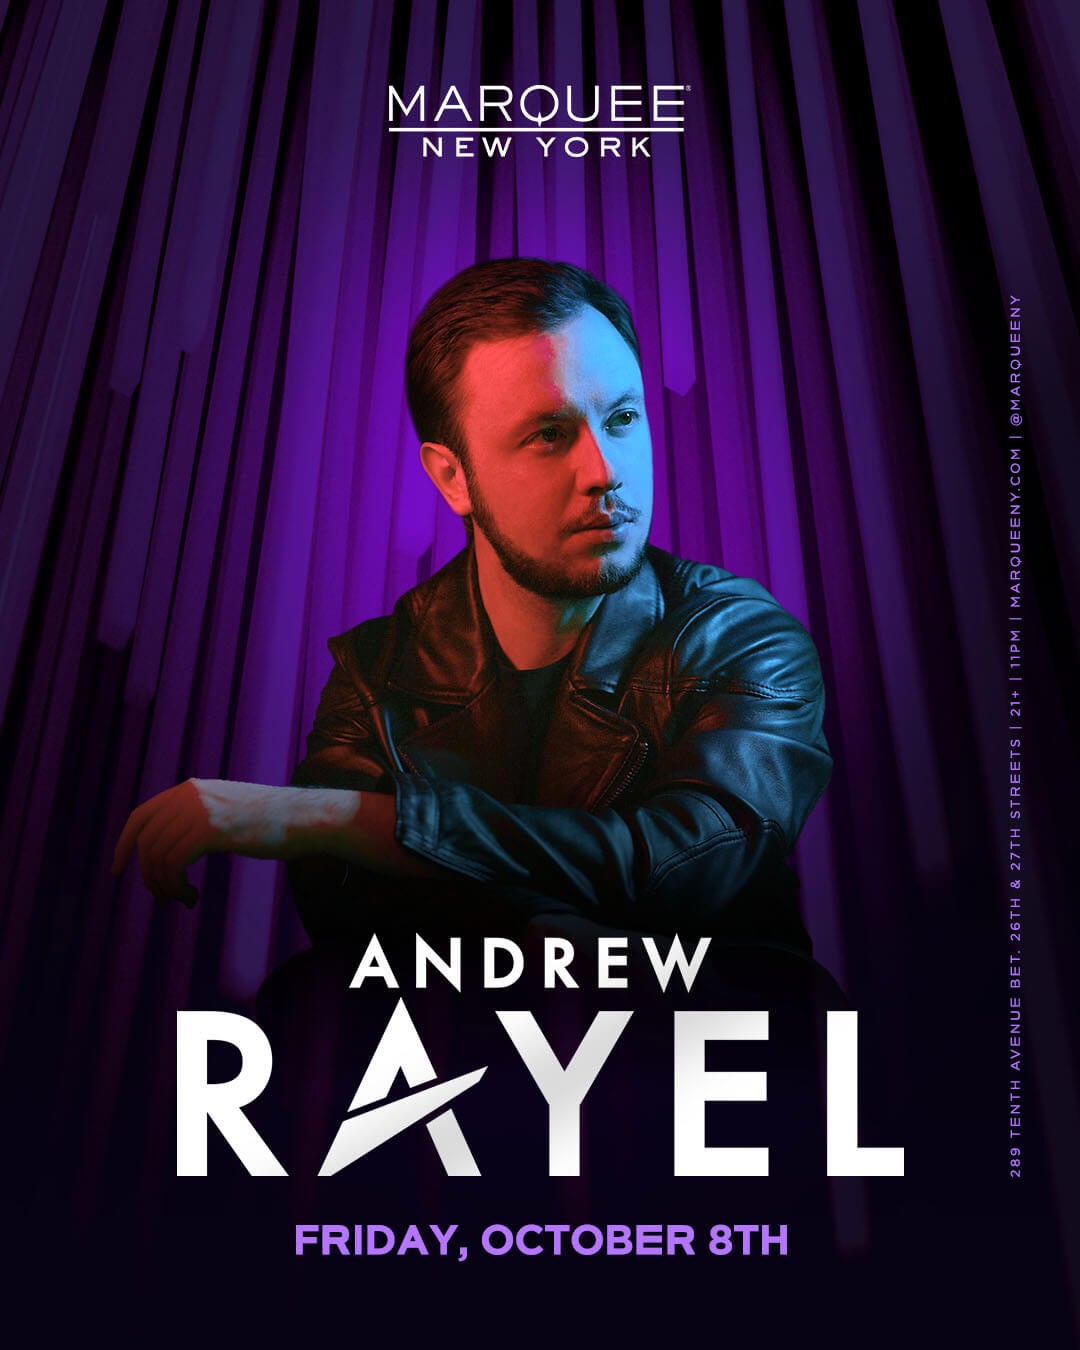 10/8/21 Andrew Rayel – Marquee New York